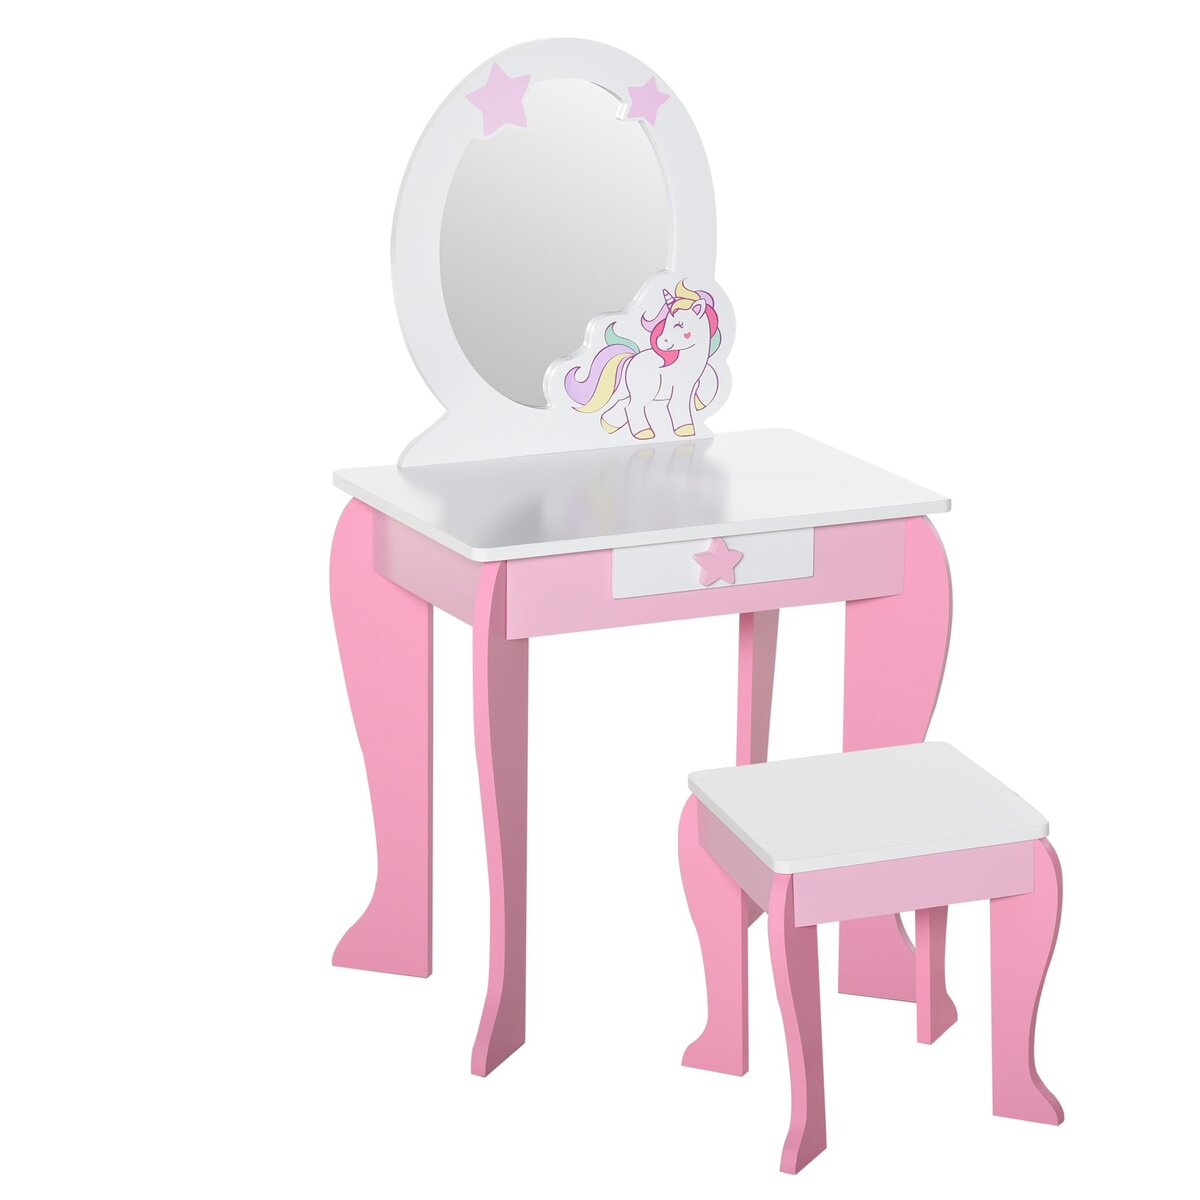 HOMCOM Coiffeuse enfant design licorne - tabouret inclus - dim. 49L x 34l x 90H cm - tiroir, miroir - MDF - rose blanc